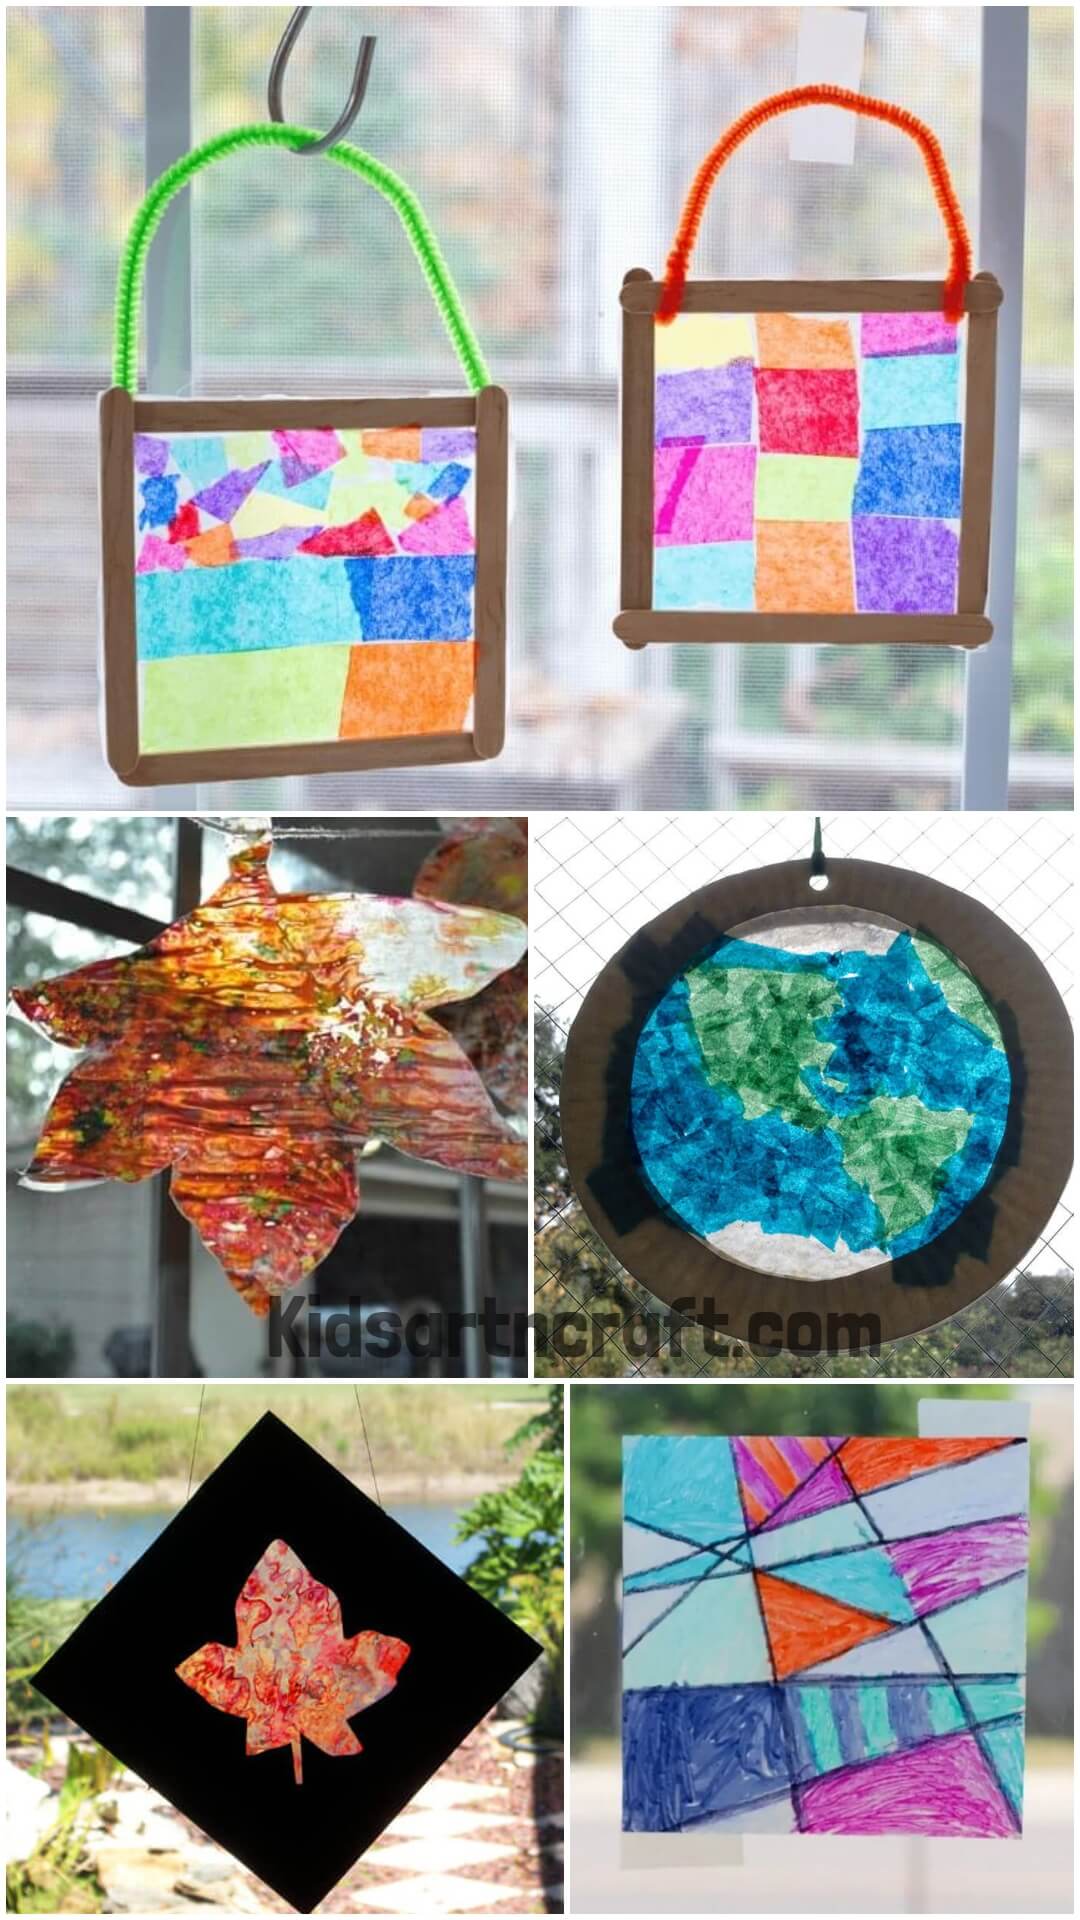  DIY Wax Paper Crafts For Preschoolers